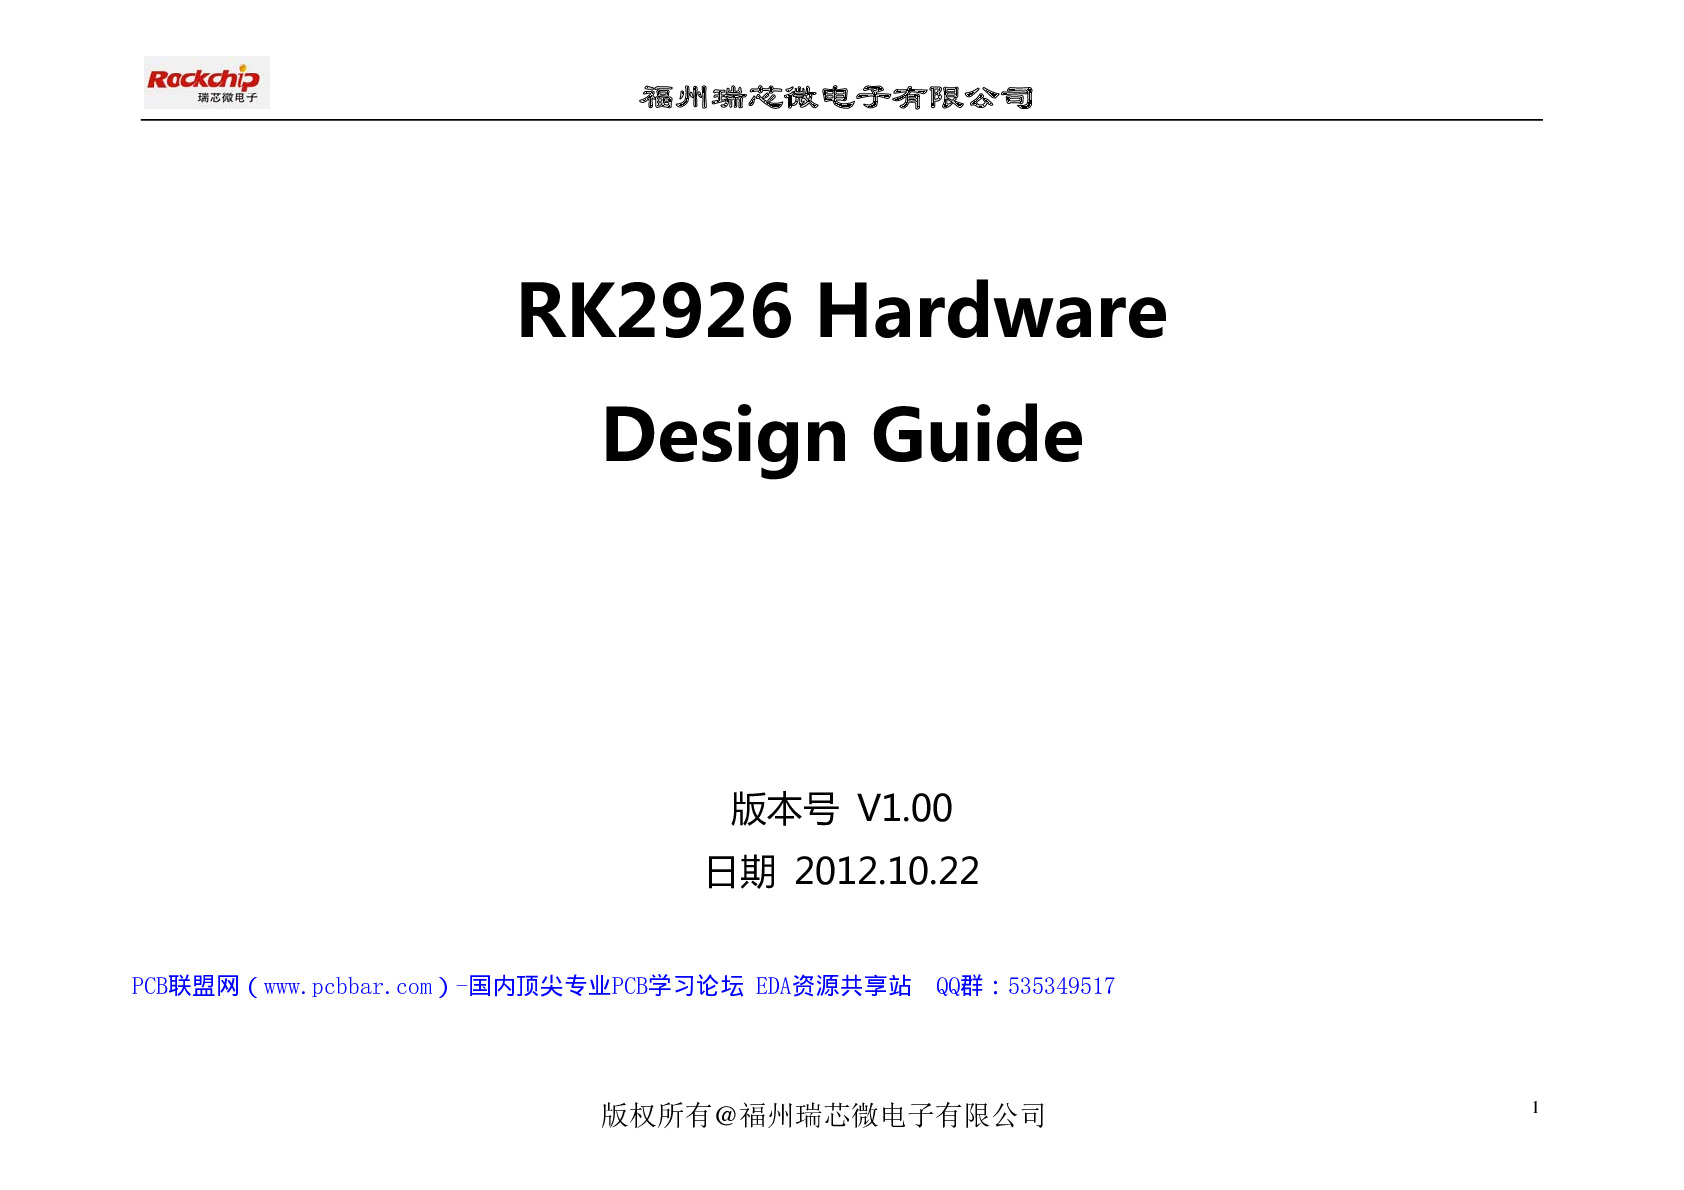 瑞星微RK2926 Hardware Design Guide-V1.00硬件设计指南